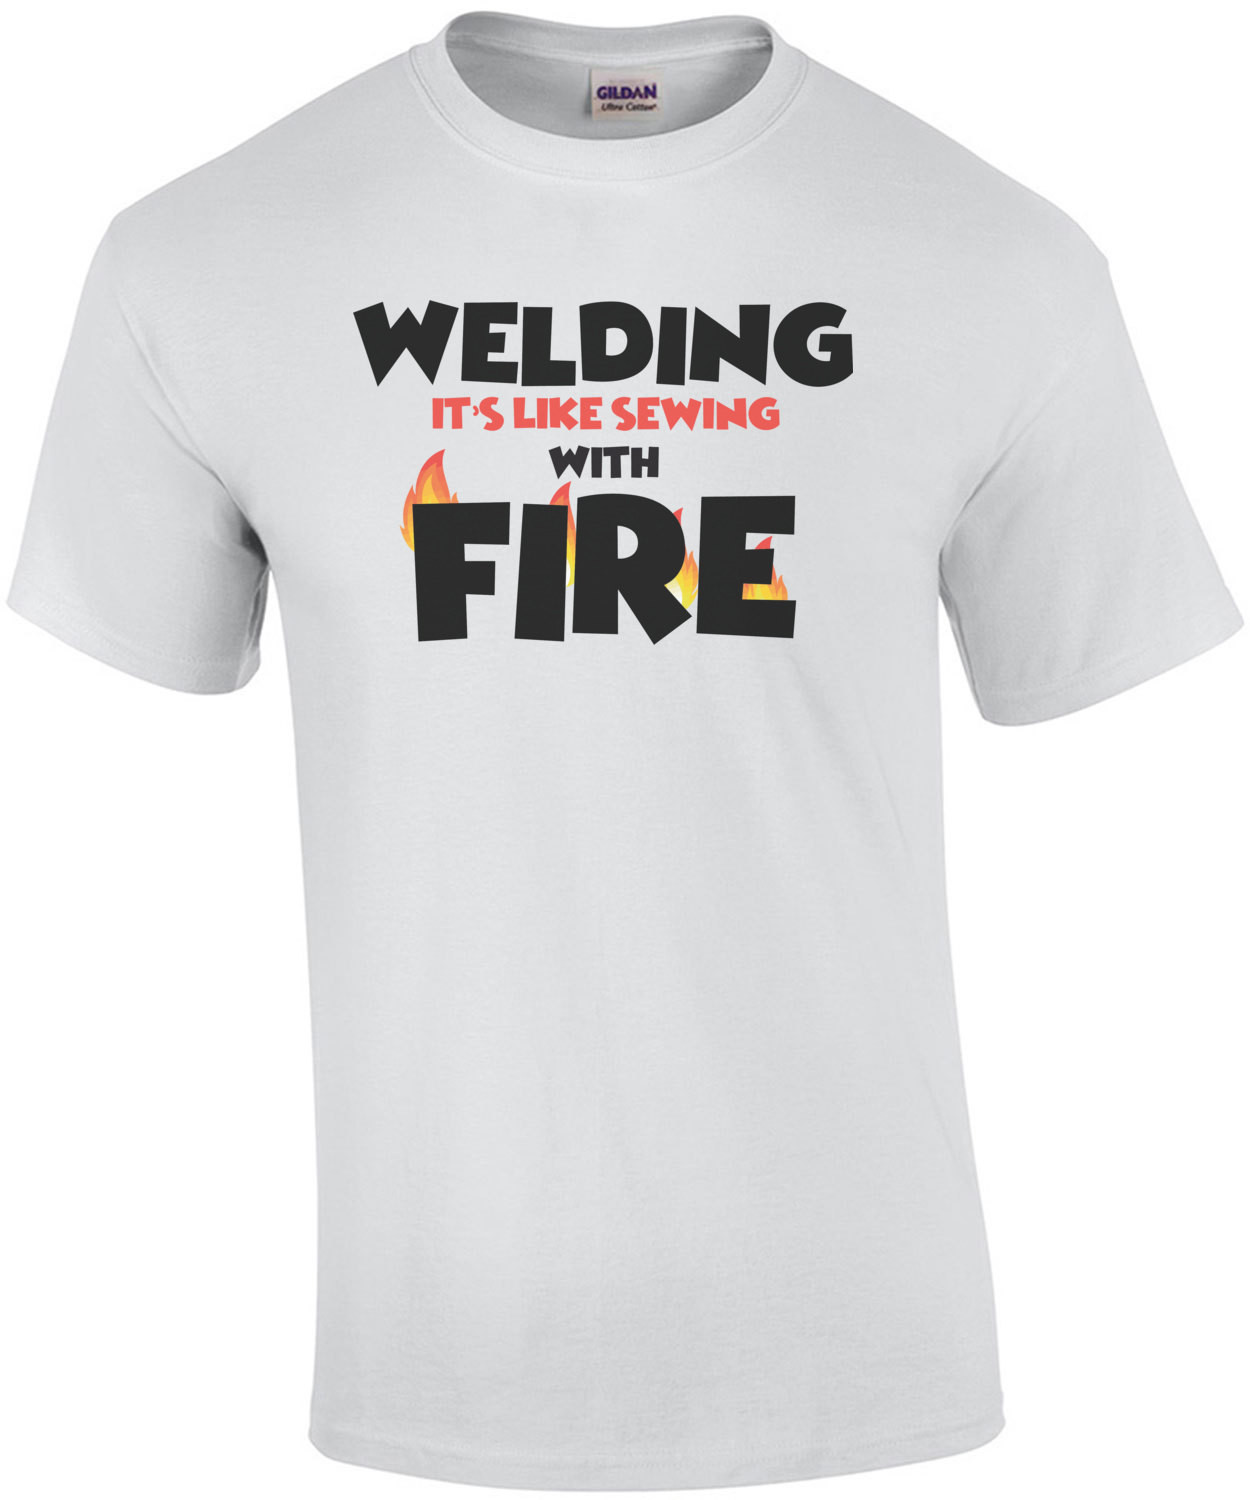 Welding is like sewing with fire - welding - funny welder